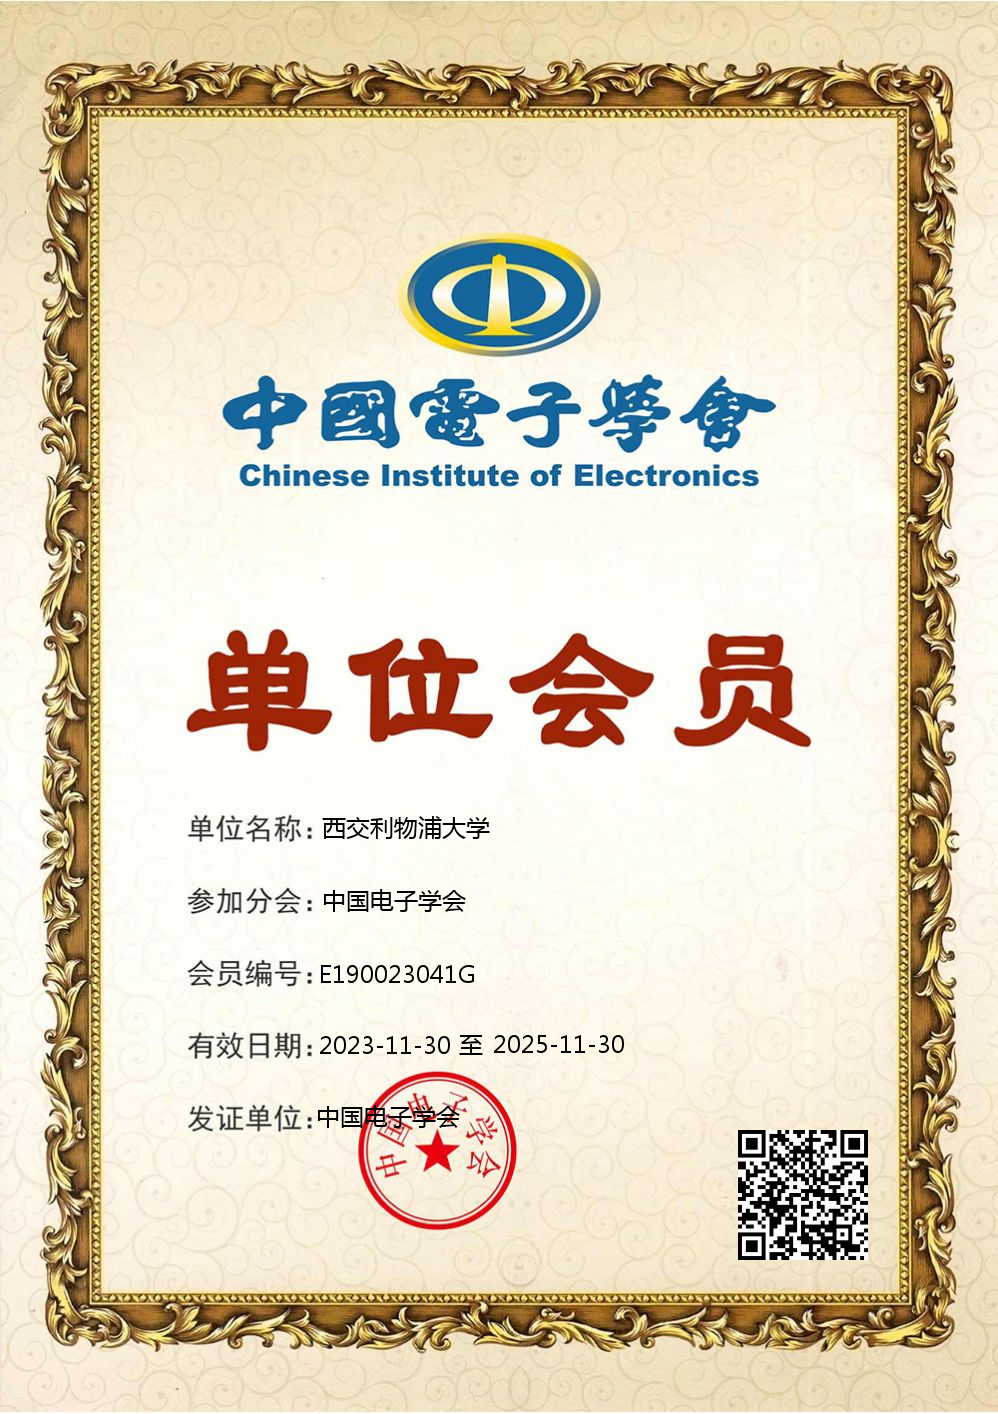 物联网学院成功申请为中国电子学会会员